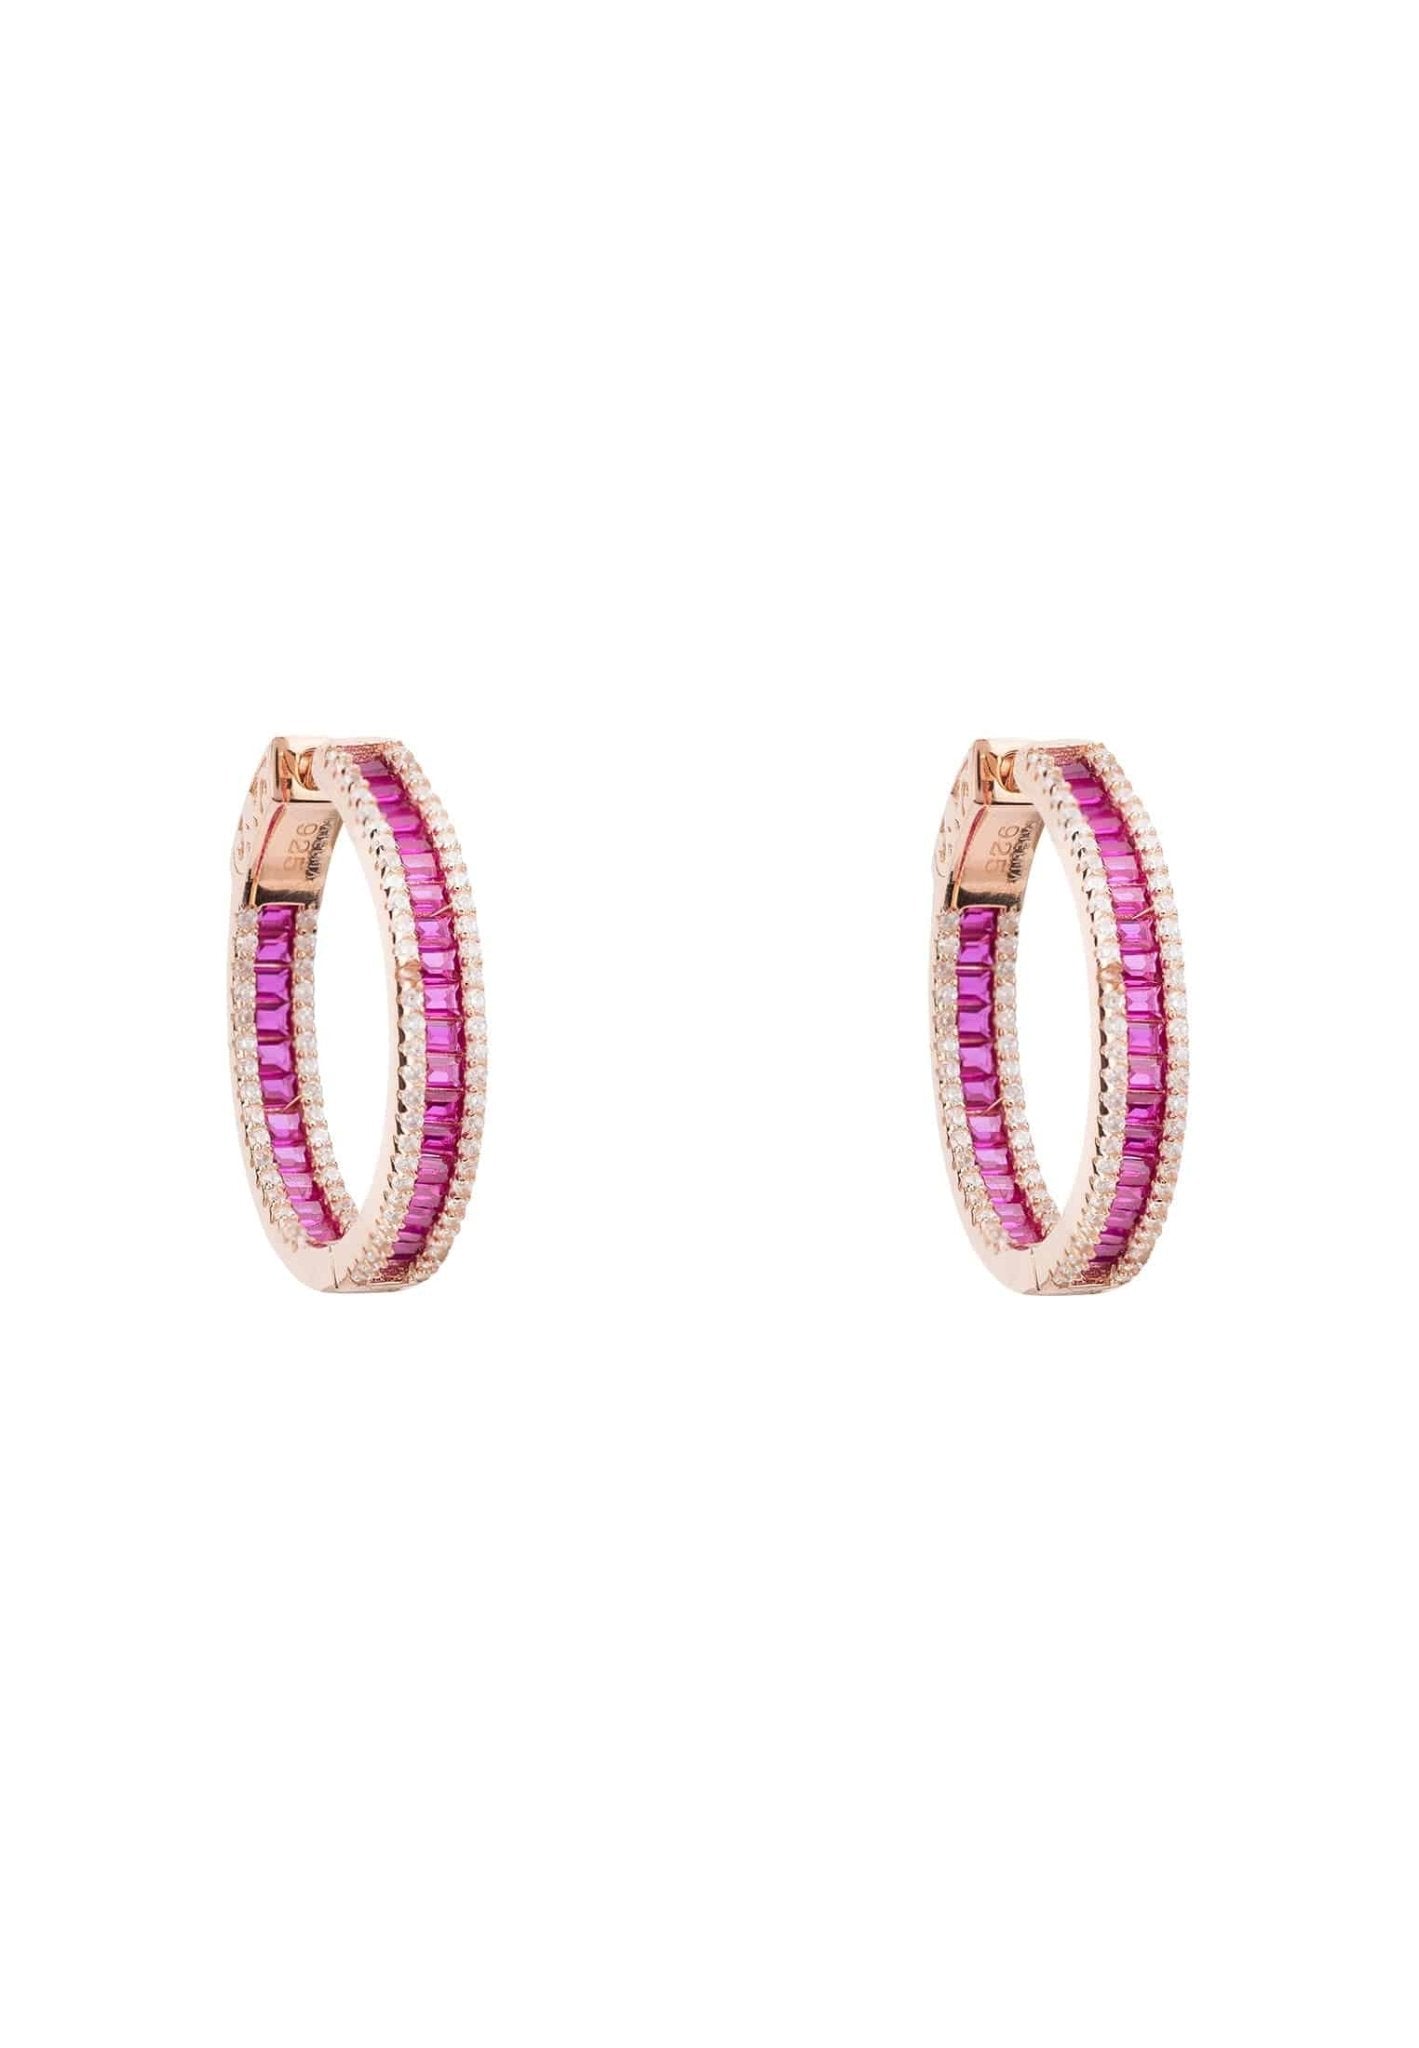 Baguette Hoop Earrings Medium Rosegold Ruby Pink - LATELITA Earrings